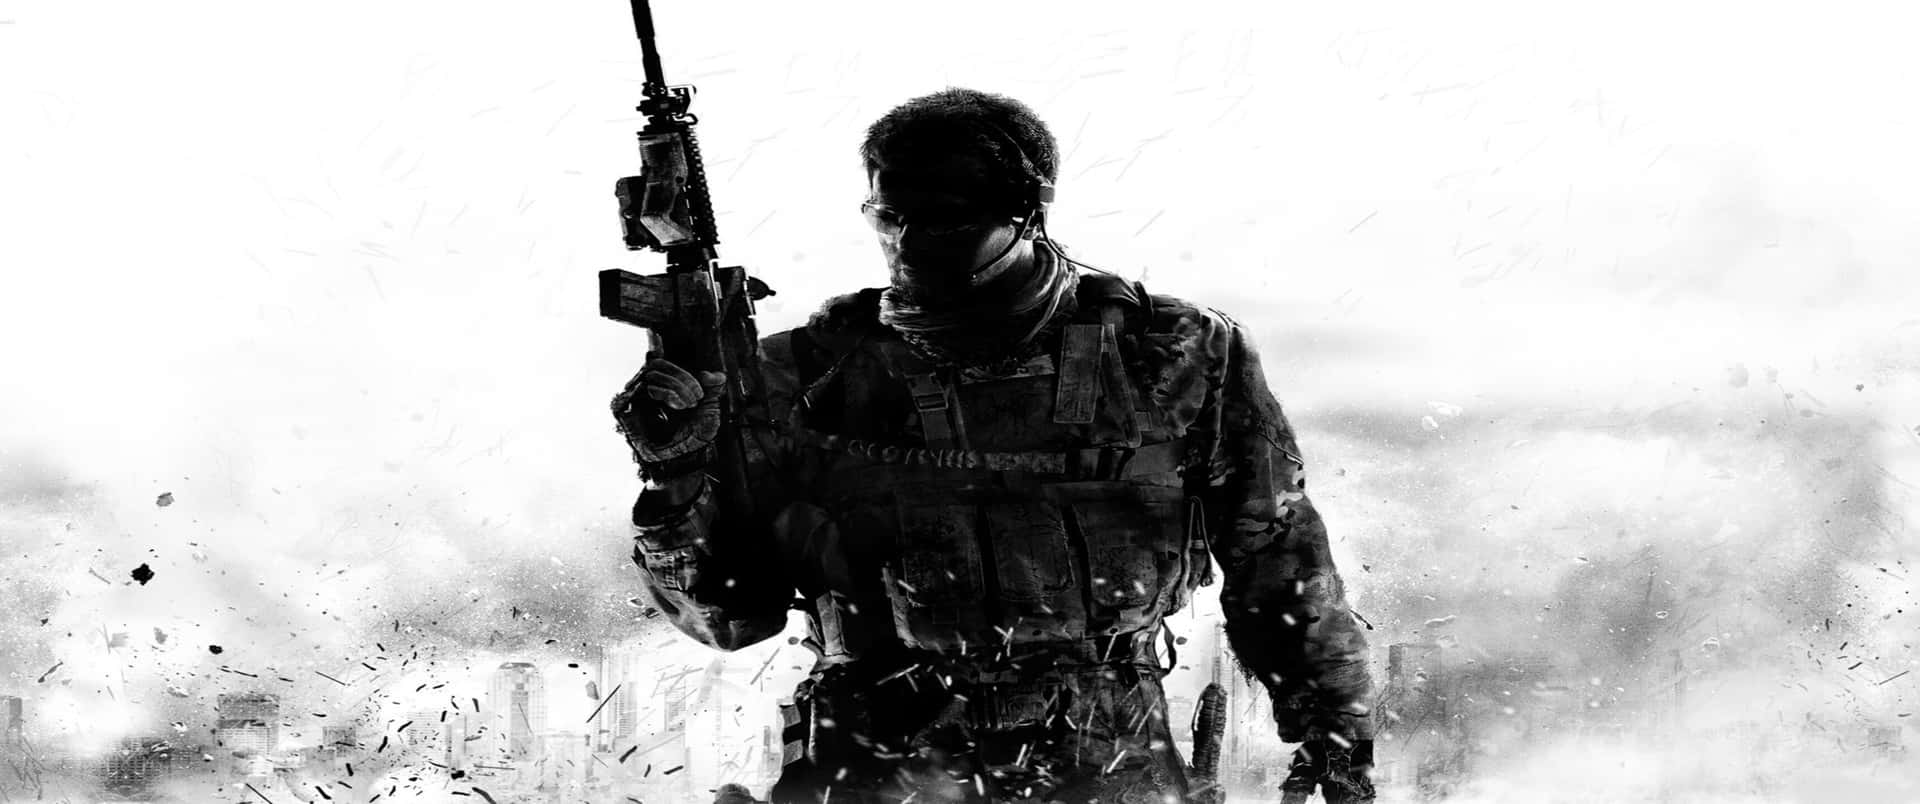 Epicaesperienza Di Gioco - Sfondo Call Of Duty: Modern Warfare 3440x1440p